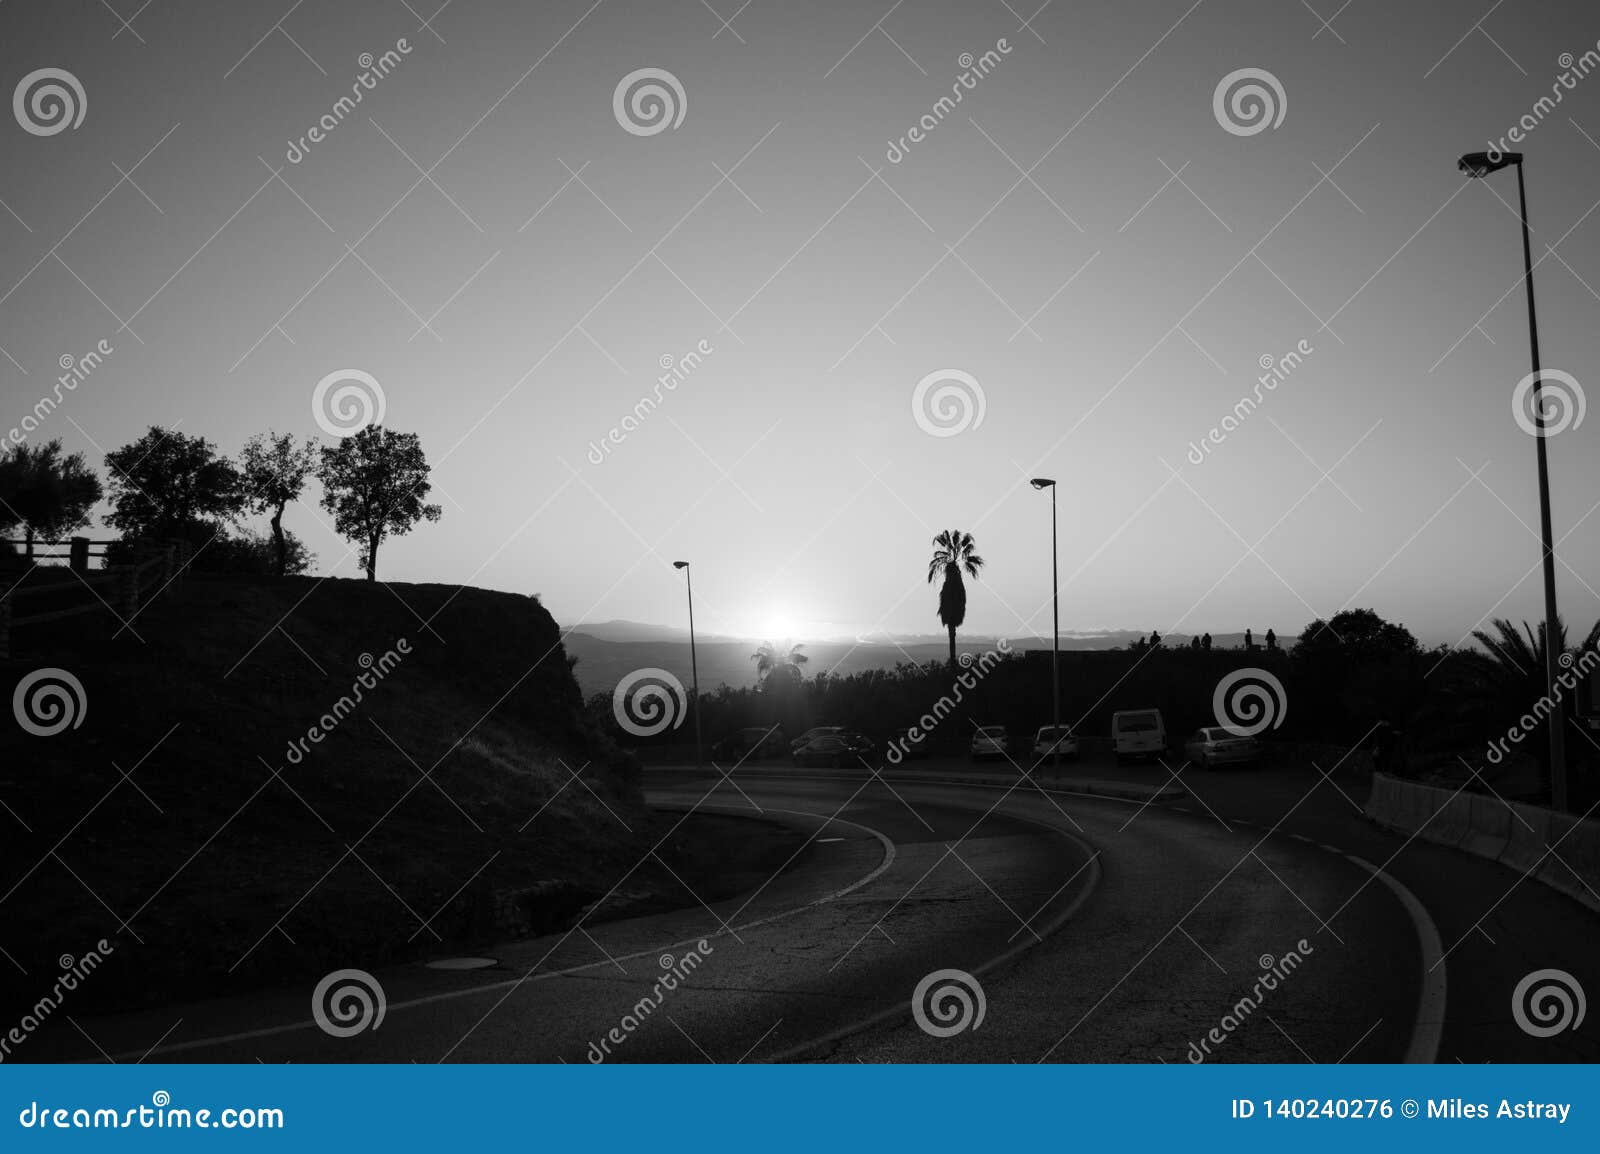 sunset at mirador del barranco del abogado lookout in granada, spain